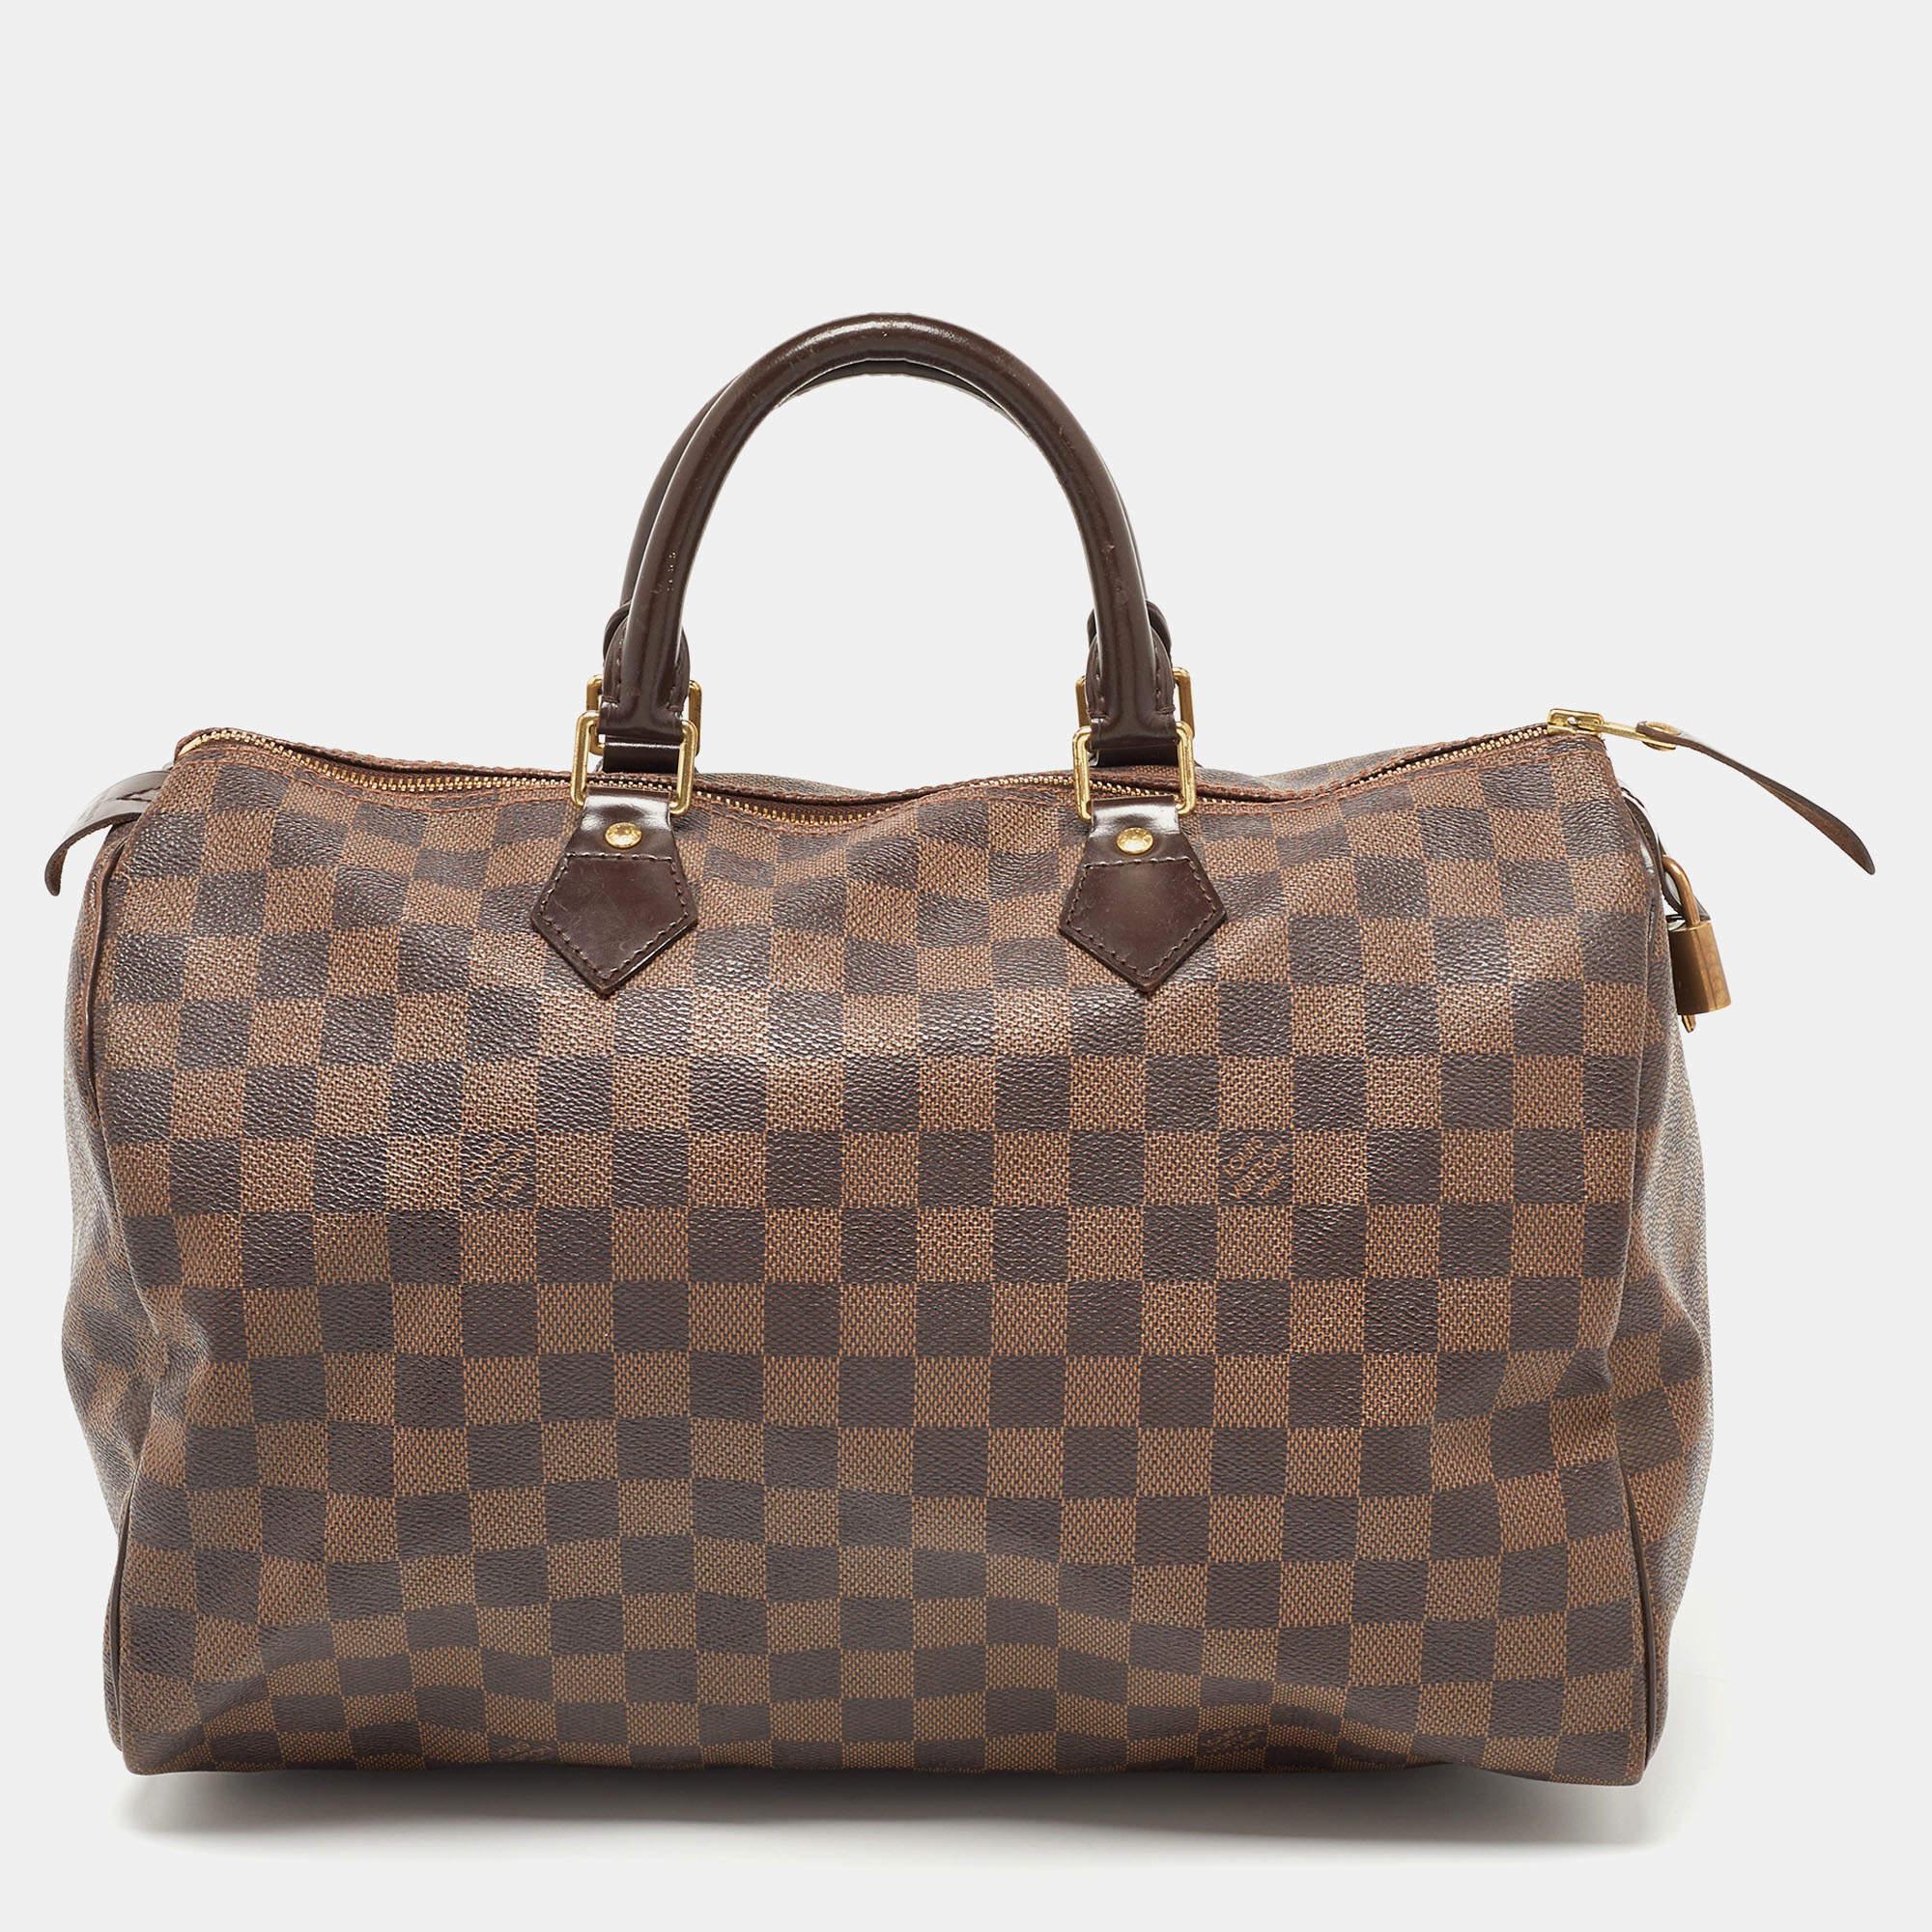 Considéré comme l'un des plus grands sacs à main de l'histoire de la mode de luxe, le Speedy de Louis Vuitton a d'abord été créé pour un usage quotidien, comme une version plus petite du célèbre sac Keepall. Ce Speedy est fabriqué en toile enduite